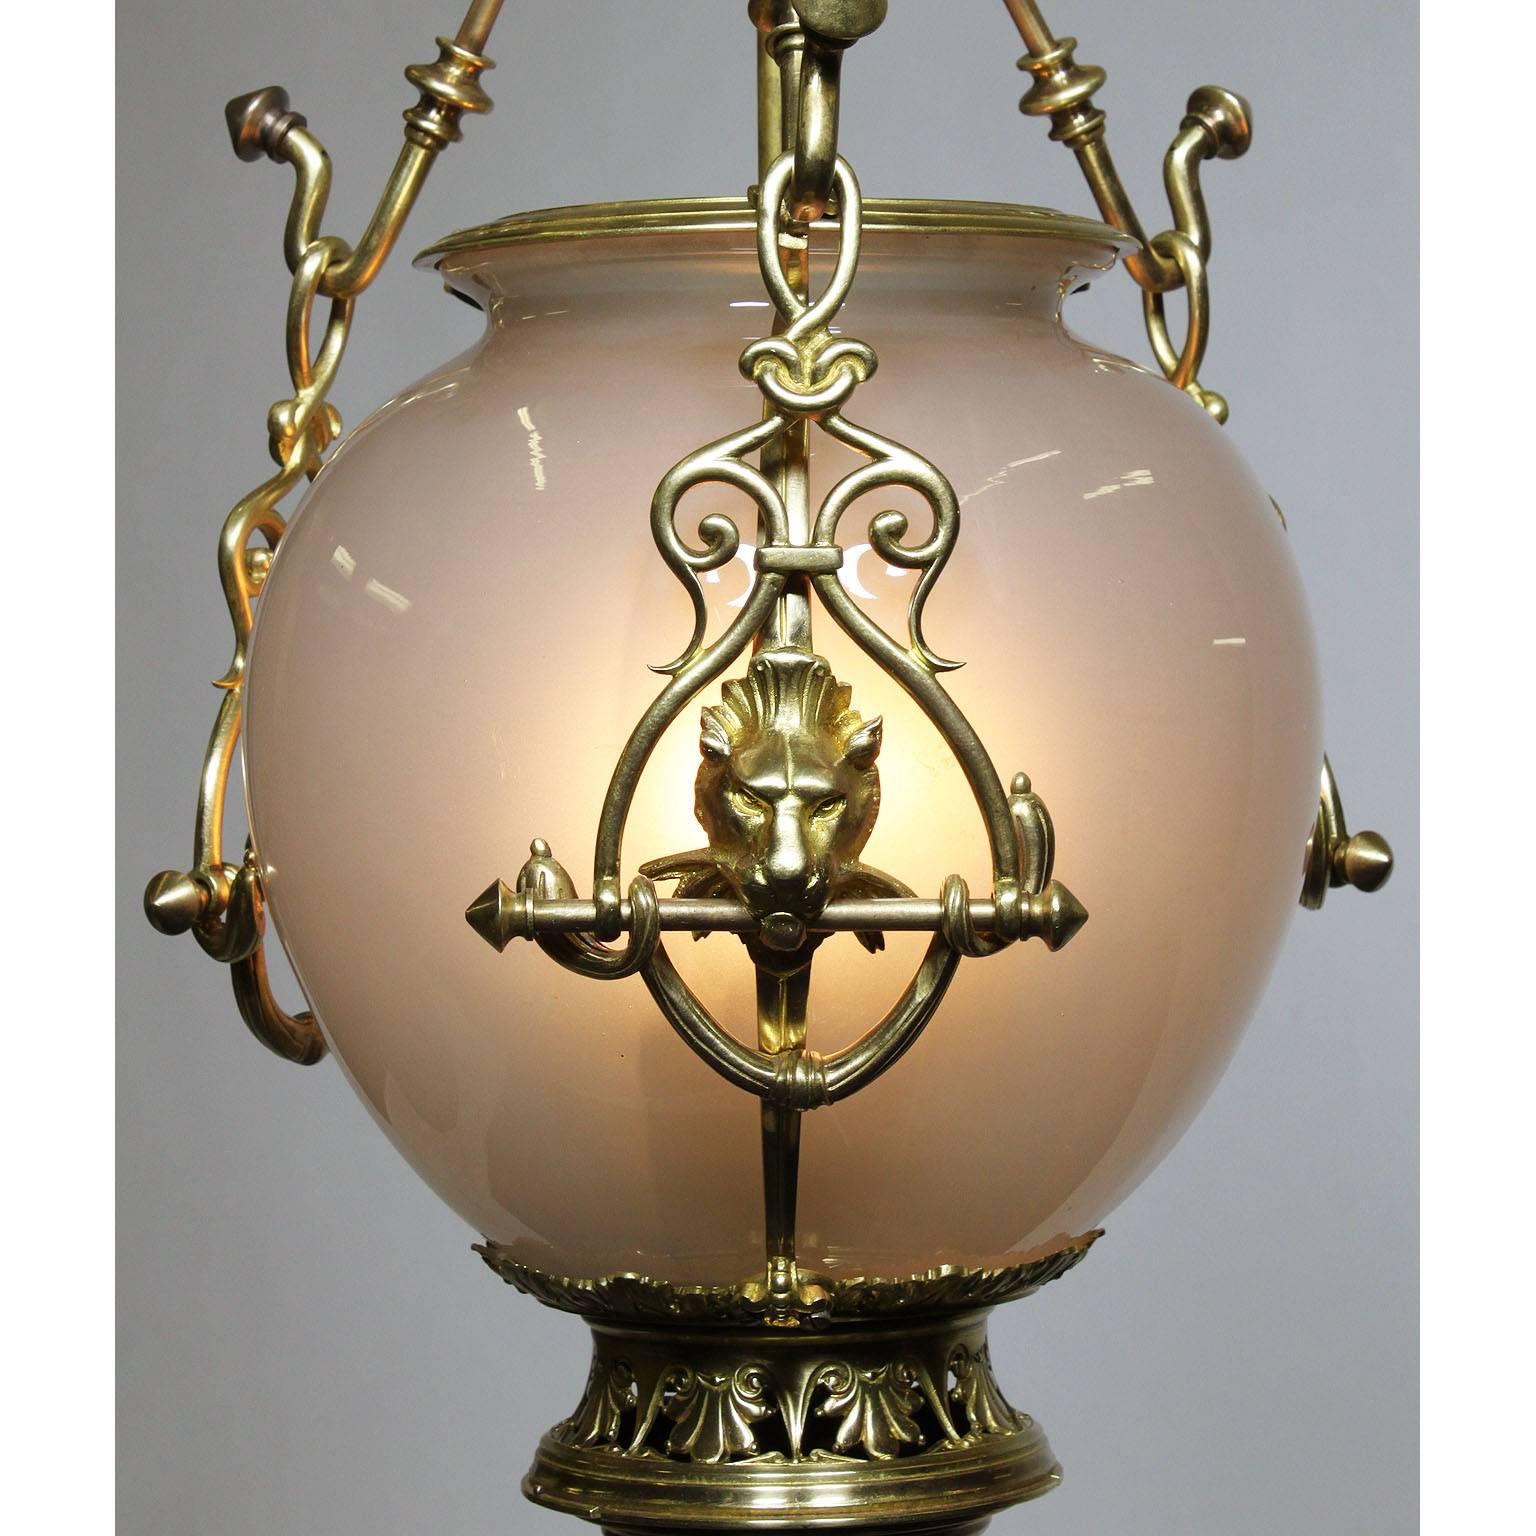 Rare lanterne suspendue de style néoclassique continental du début et du milieu du XXe siècle, en bronze doré et en verre opalin. Le globe ovoïde en verre soufflé dépoli, avec trois lumières intérieures, suspendu par trois crochets ornementaux